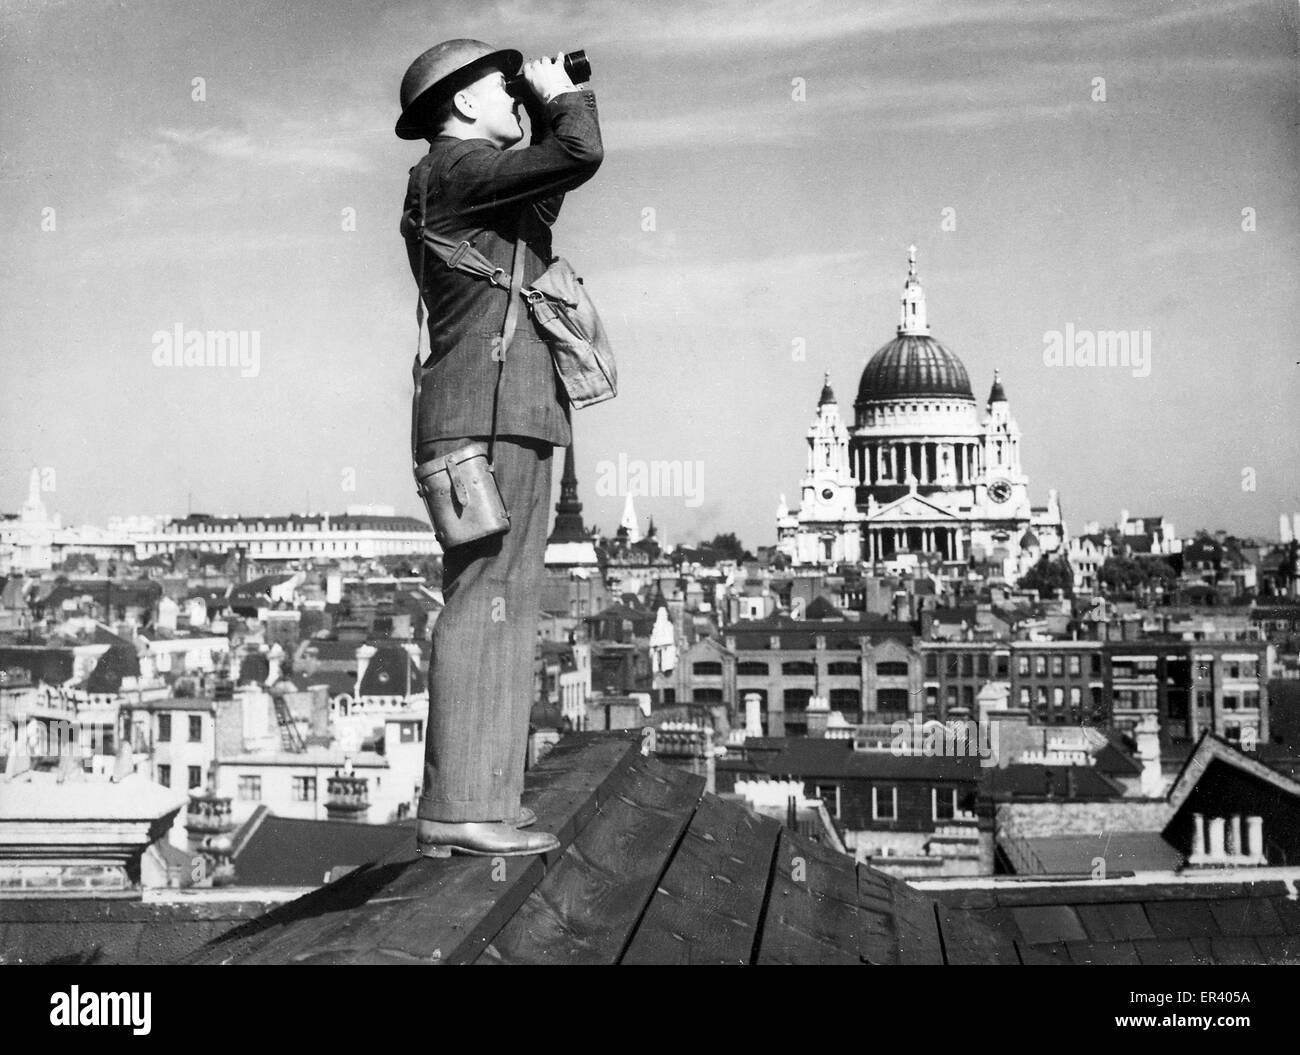 Ein Royal Observer Corps Spotter scannt den Himmel über London. Luftschlacht um England Luft Beobachter zu wachen über London Stockfoto